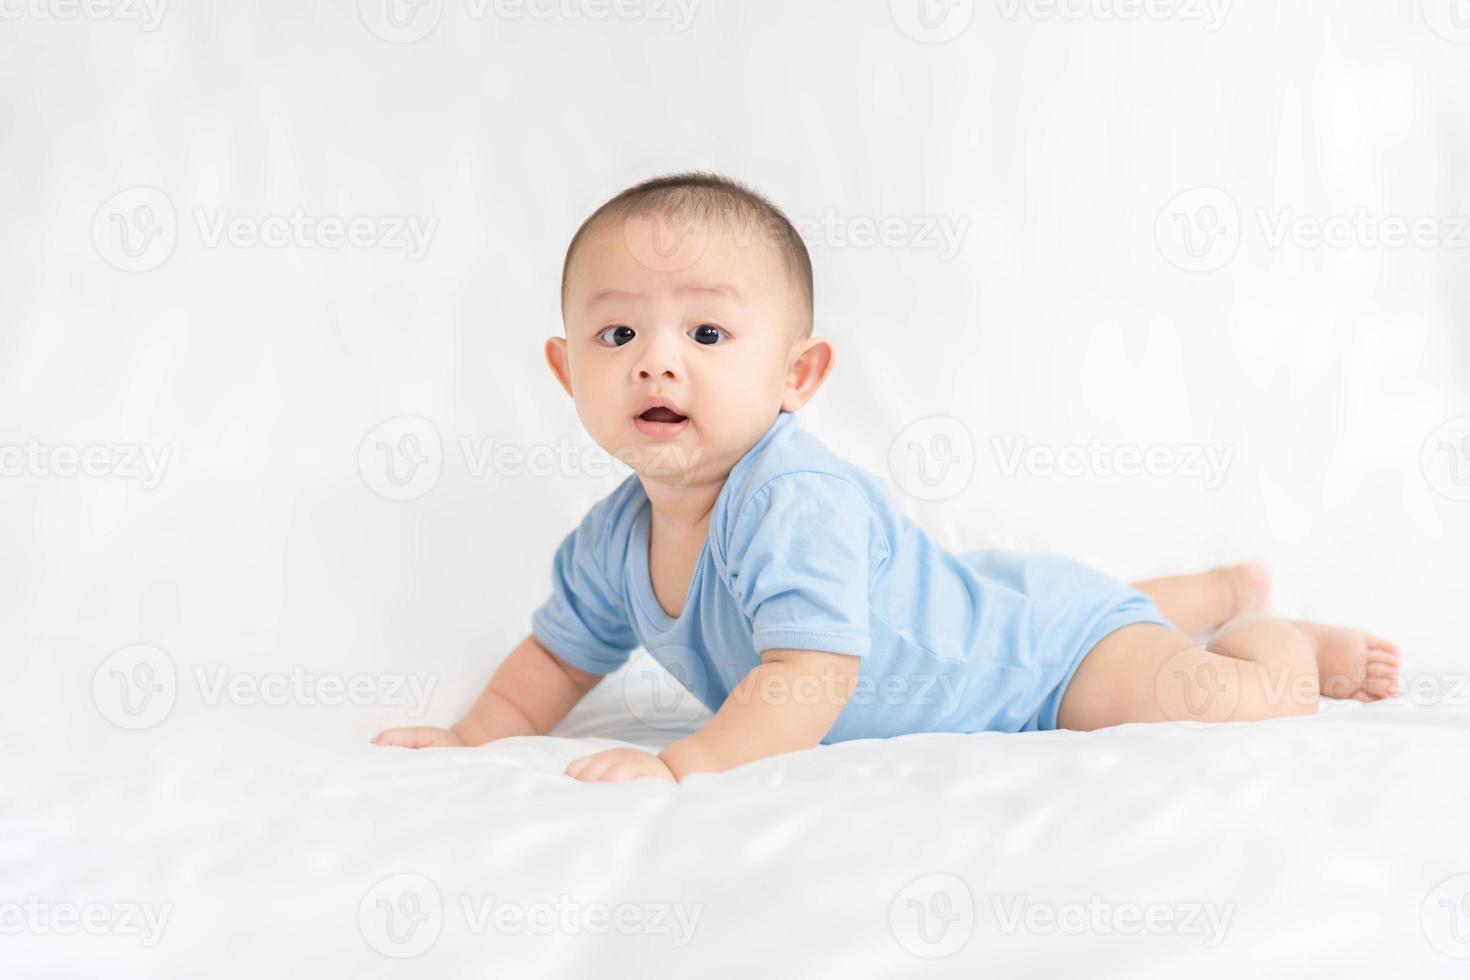 gelukkige familie, schattige aziatische pasgeboren baby draagt blauw shirt liegen, kruipen, spelen op wit bed met lachende glimlach blij gezicht. klein onschuldig baby schattig kind in de eerste dag van het leven. moederdagconcept. foto